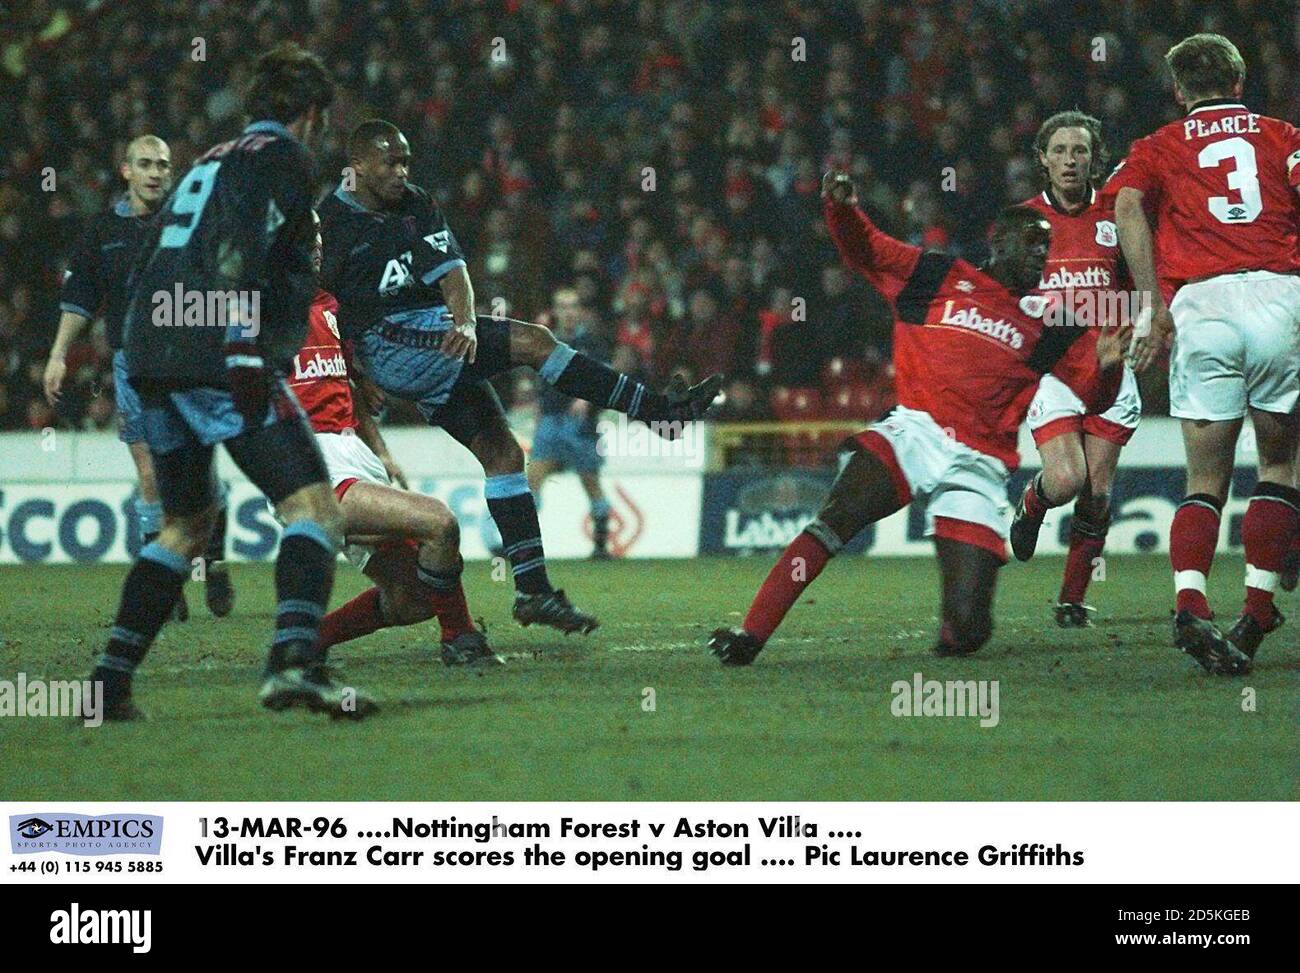 Franz Carr de Aston Villa anota el gol de apertura Foto de stock